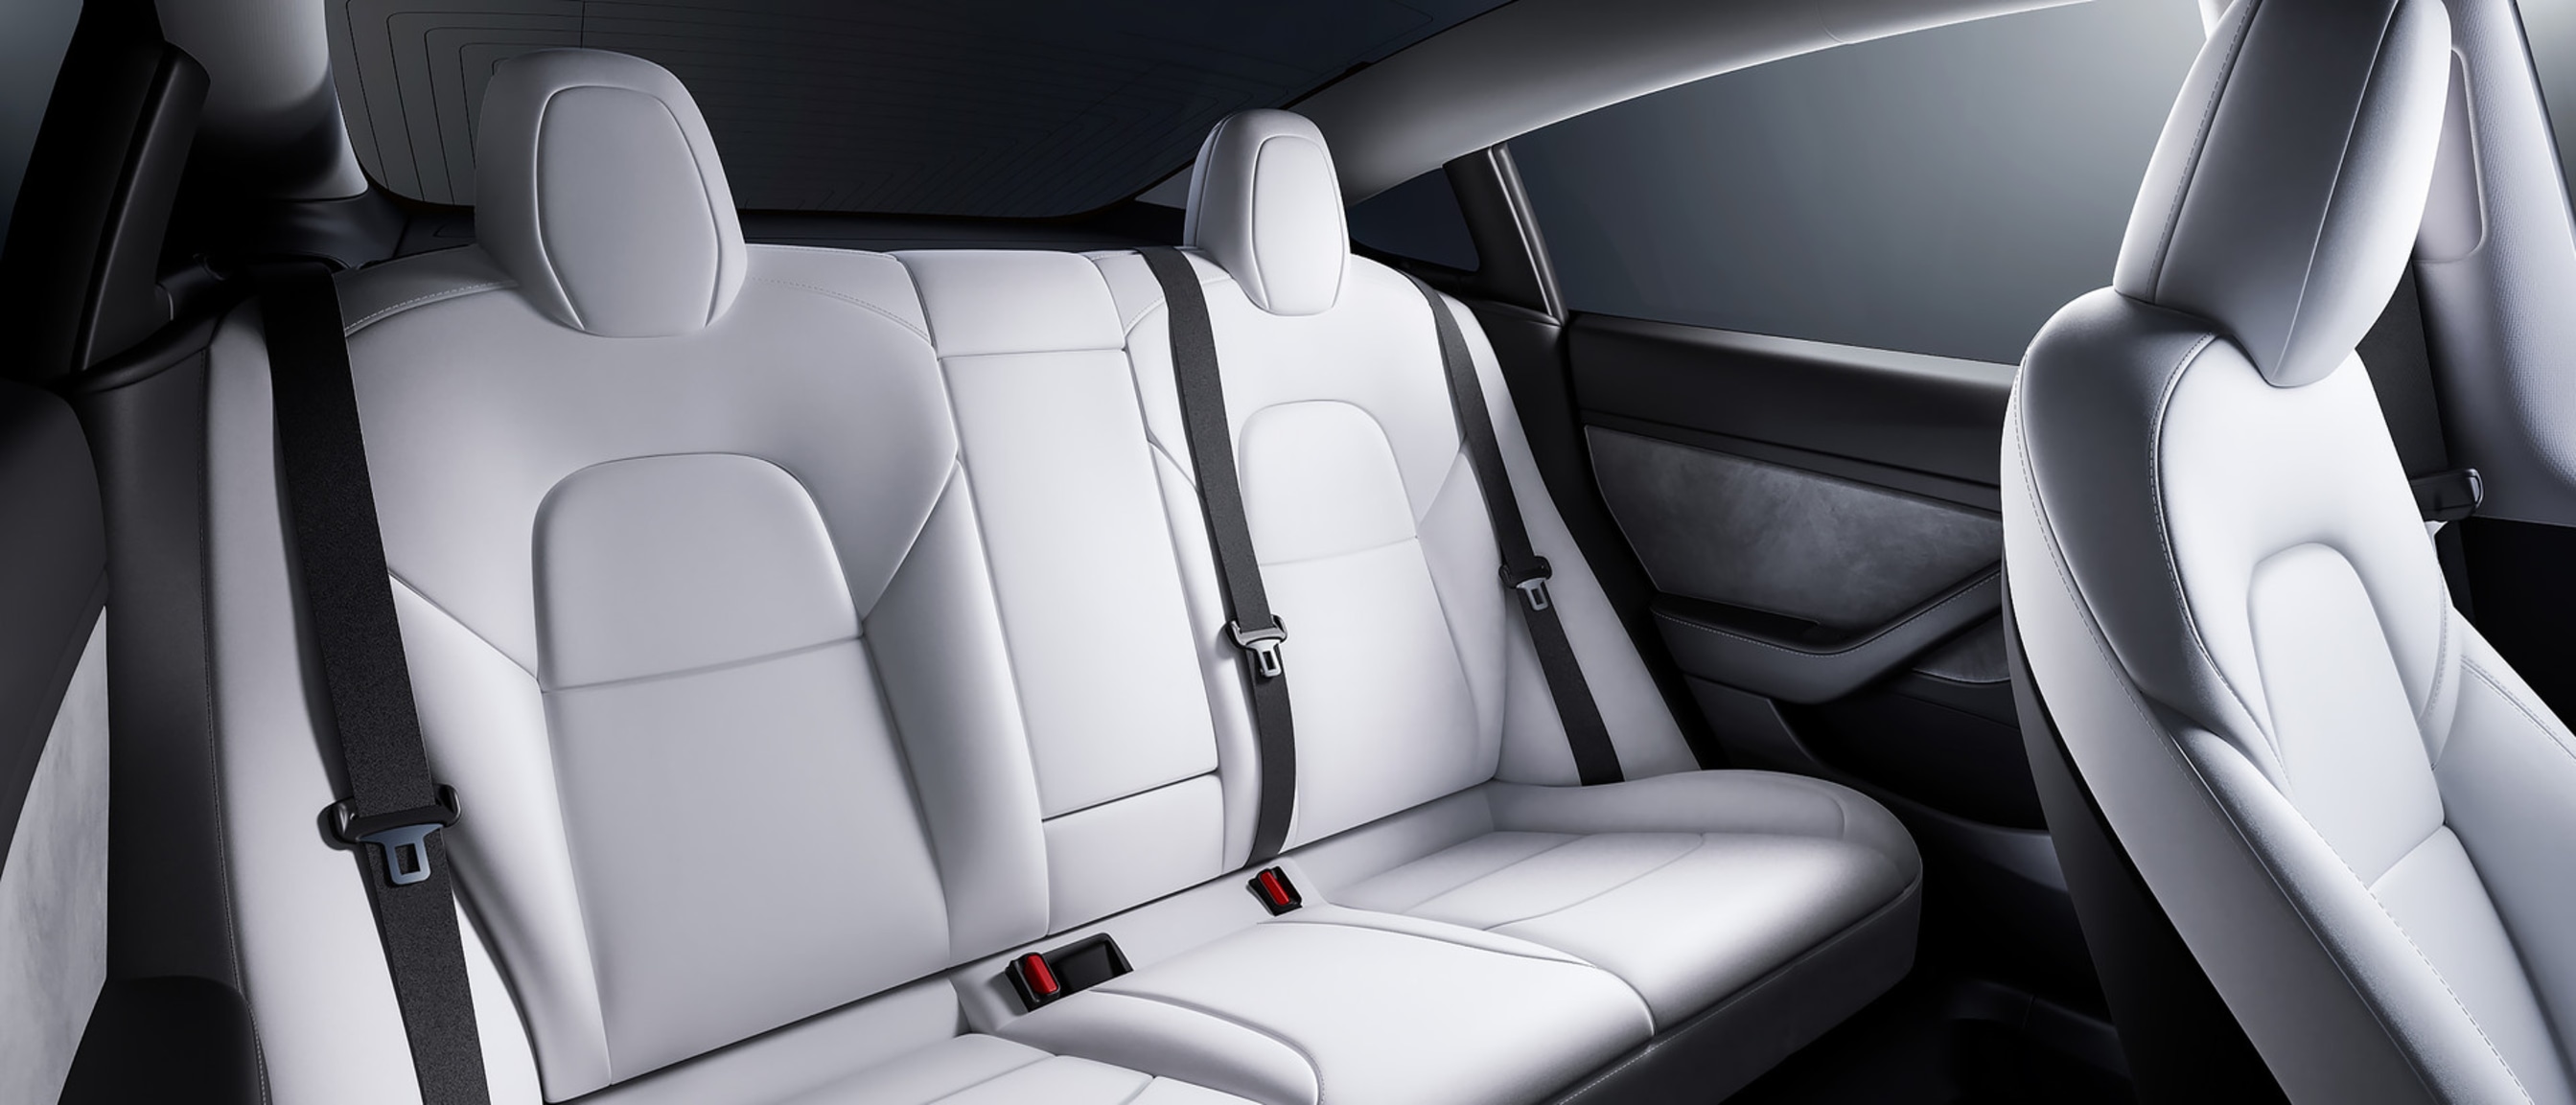 白色内饰款 Model 3 的宽敞后排座椅视图